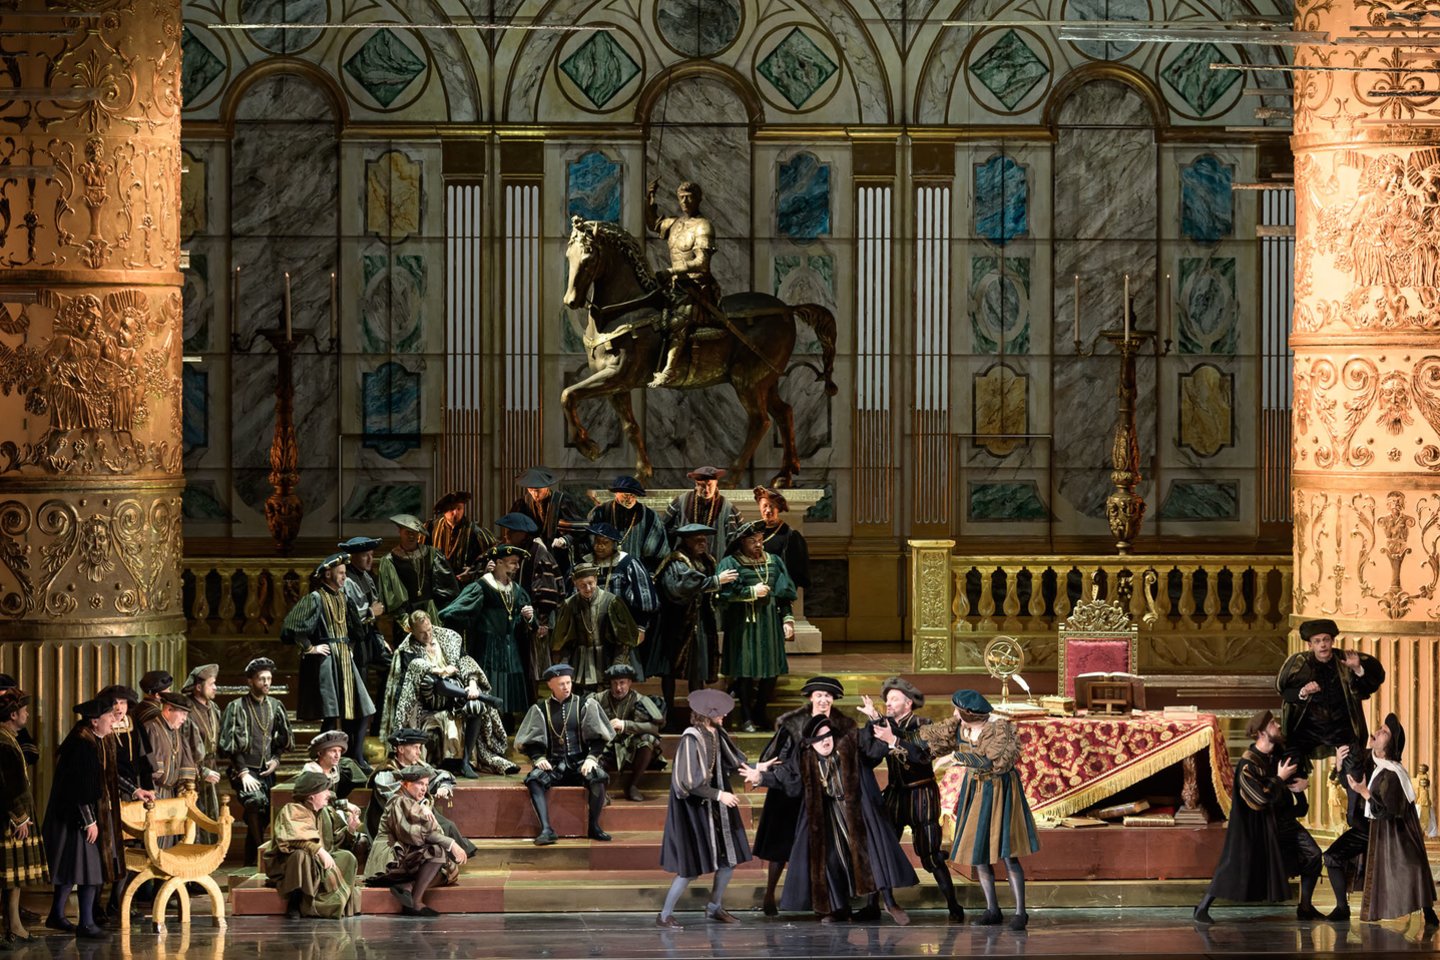  F.Zeffirelli „Rigoletas“ nukėlė publiką į G.Verdi operos librete vaizduojamą XVI a. Mantujos dvarą su jo manieromis, papročiais ir puošnumu.<br> M.Aleksos nuotr.